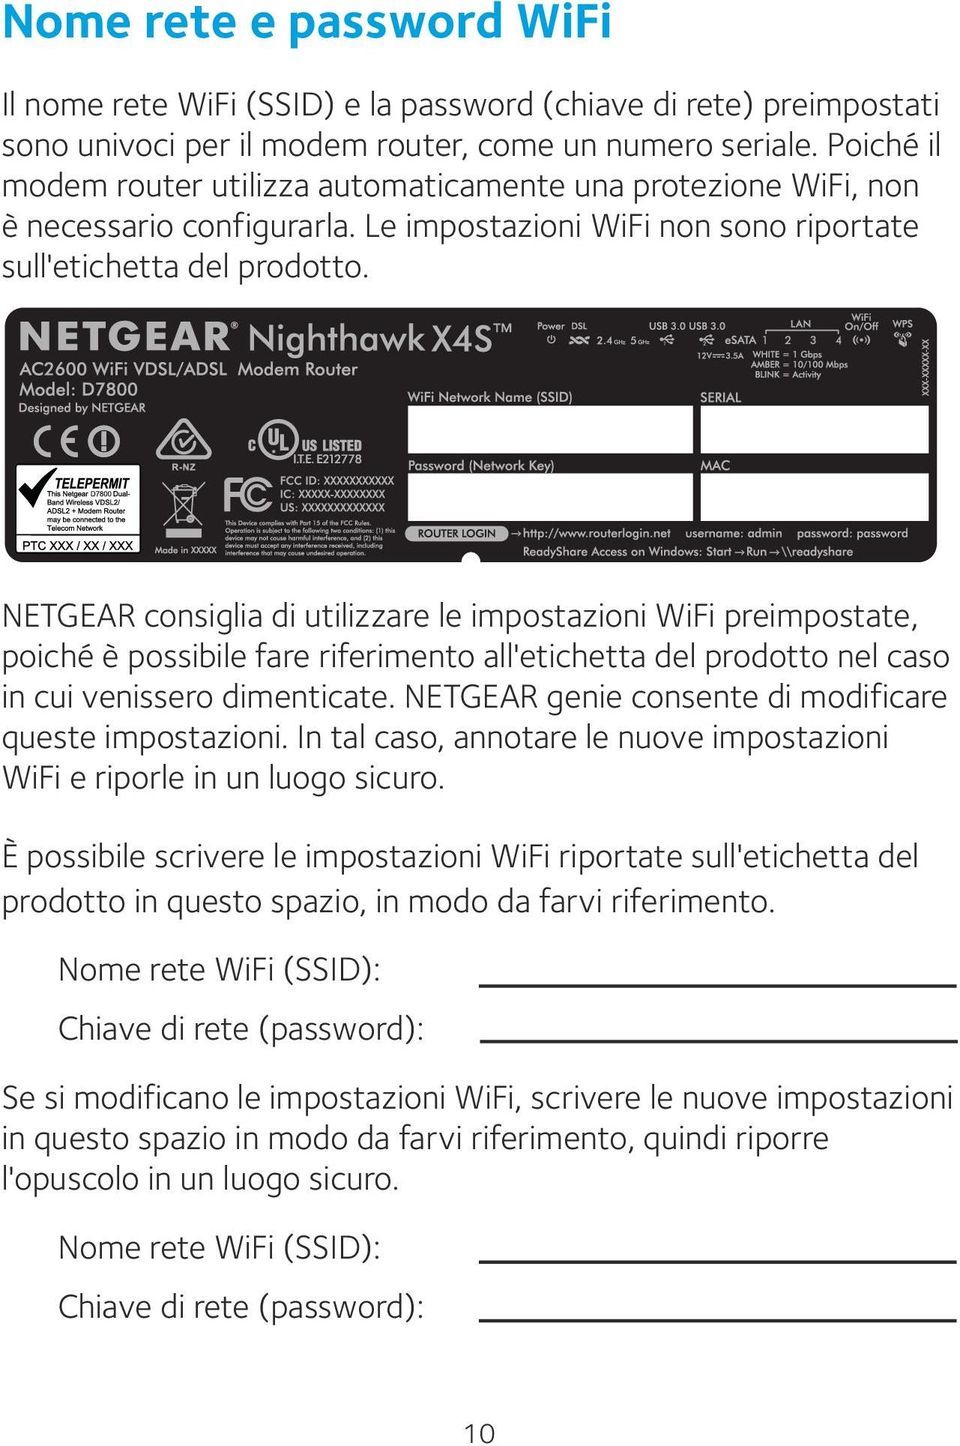 NETGEAR consiglia di utilizzare le impostazioni WiFi preimpostate, poiché è possibile fare riferimento all'etichetta del prodotto nel caso in cui venissero dimenticate.